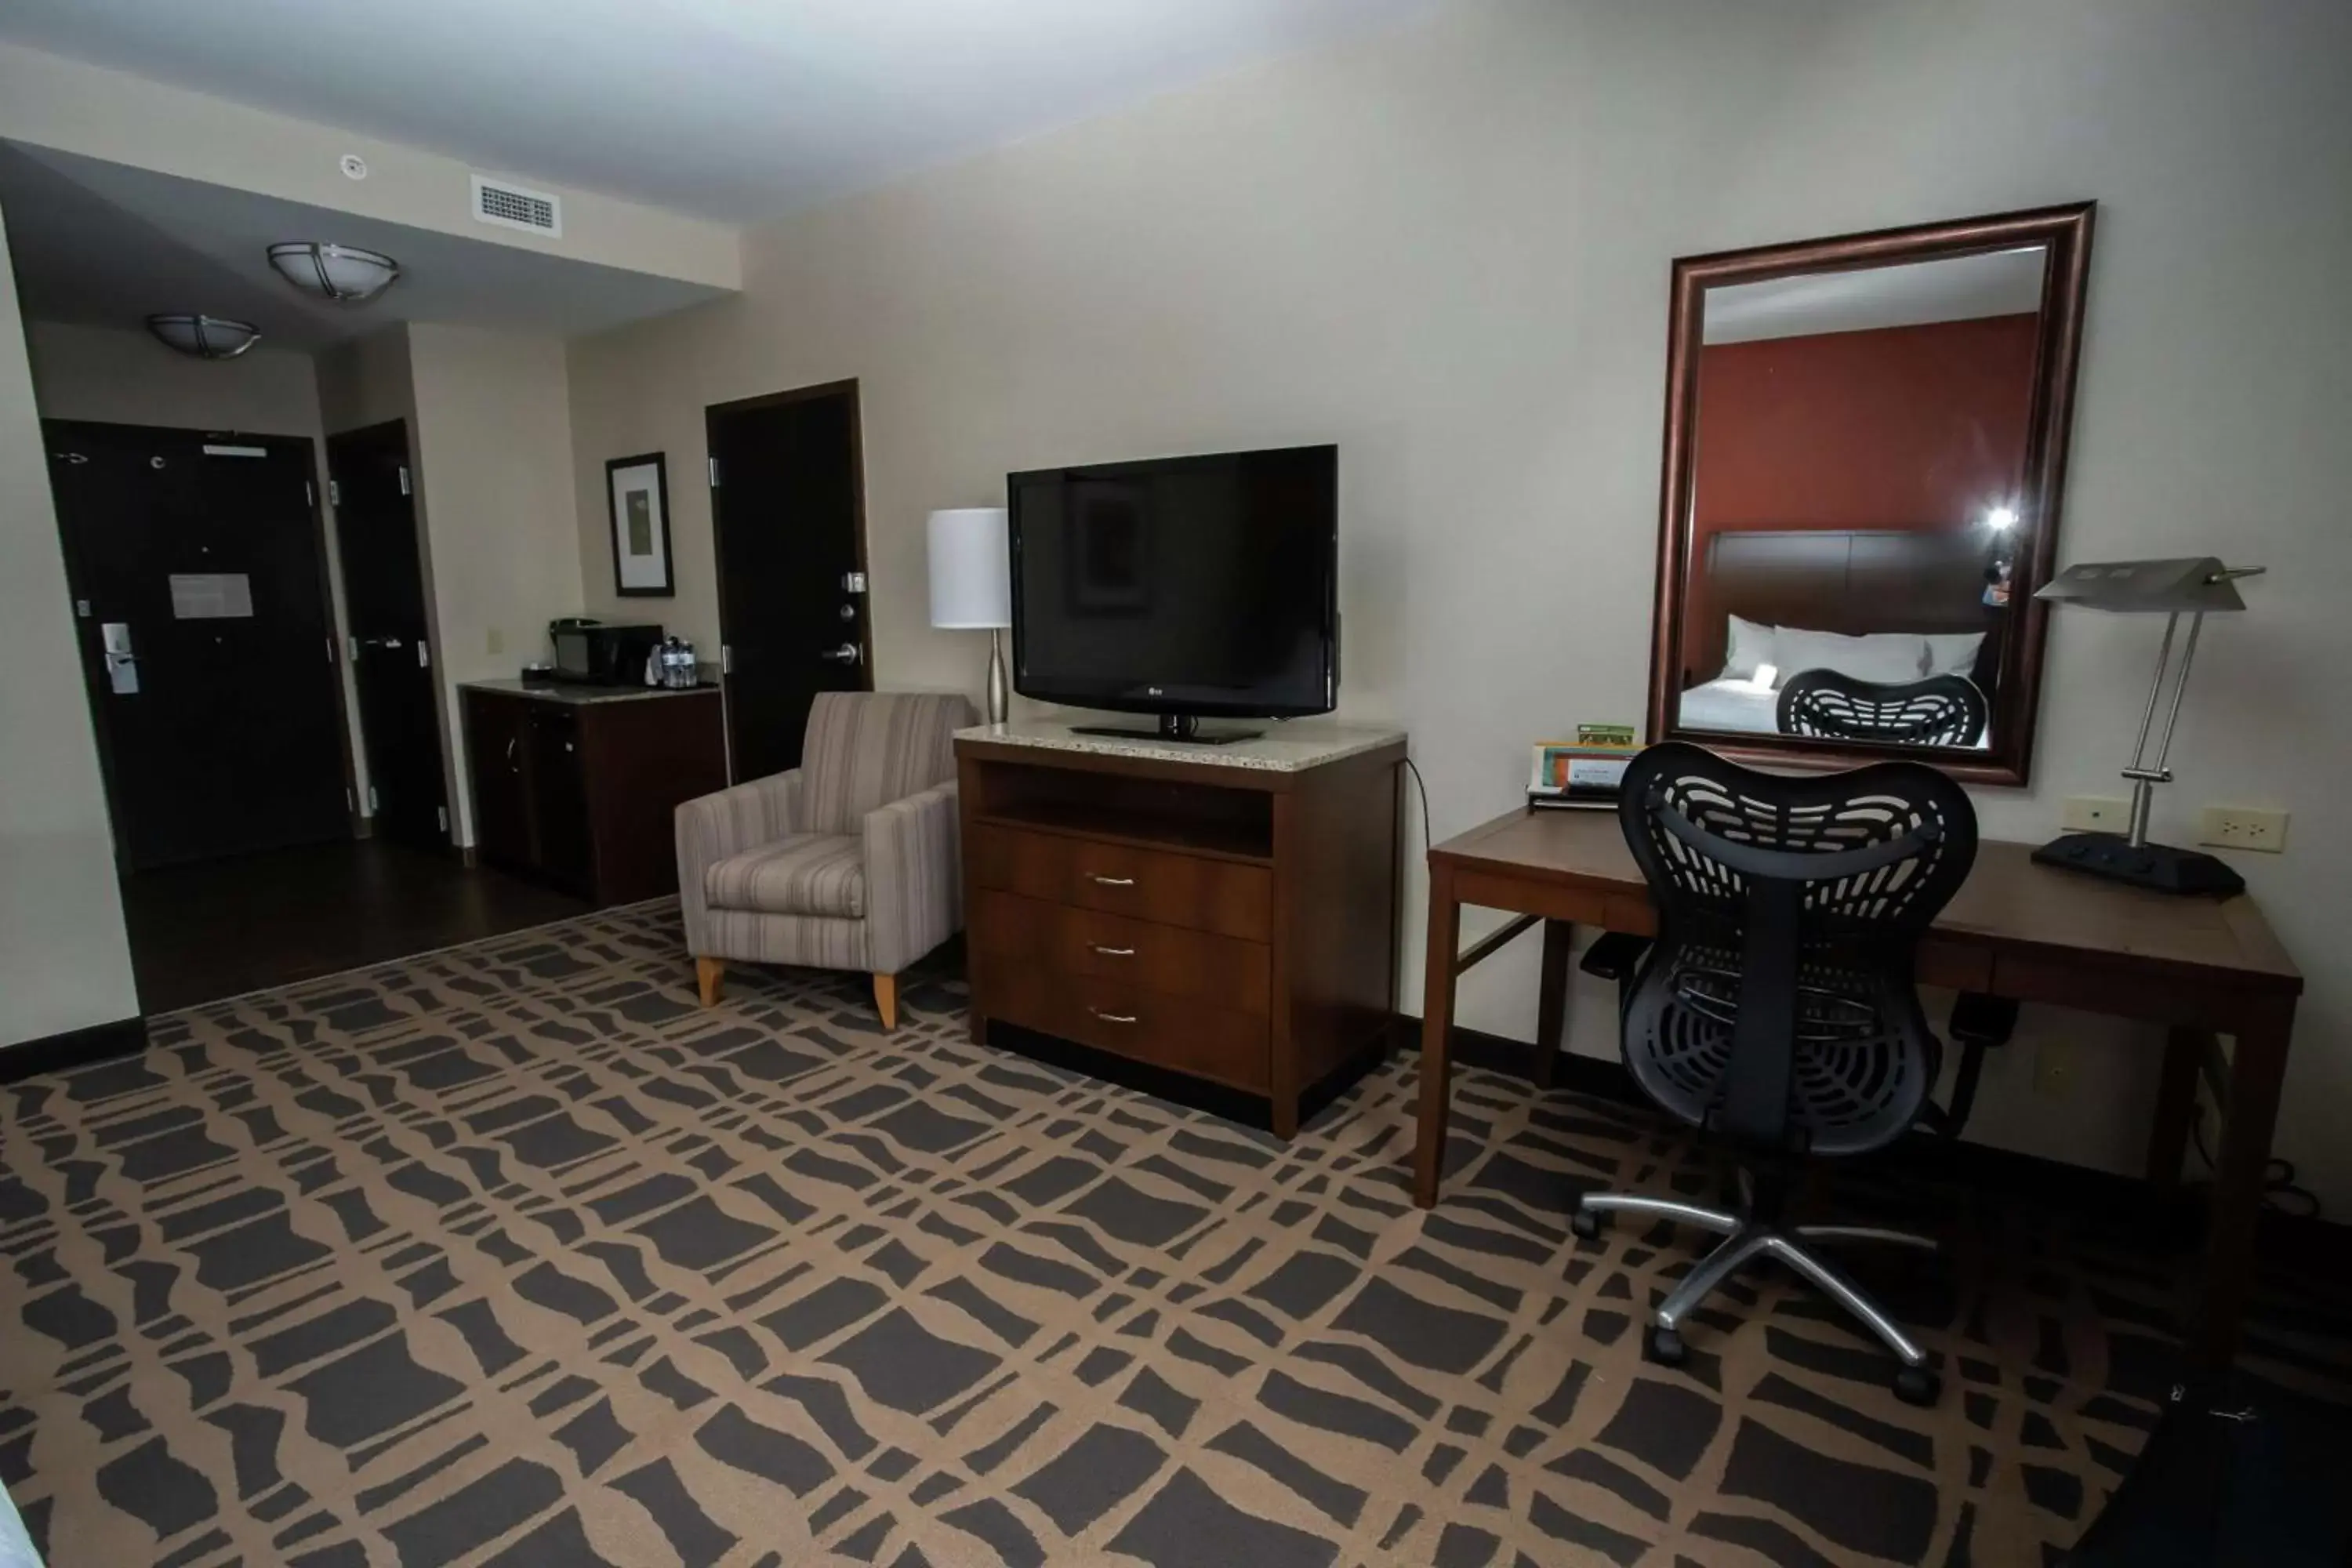 Bedroom, TV/Entertainment Center in Hilton Garden Inn Dayton South - Austin Landing